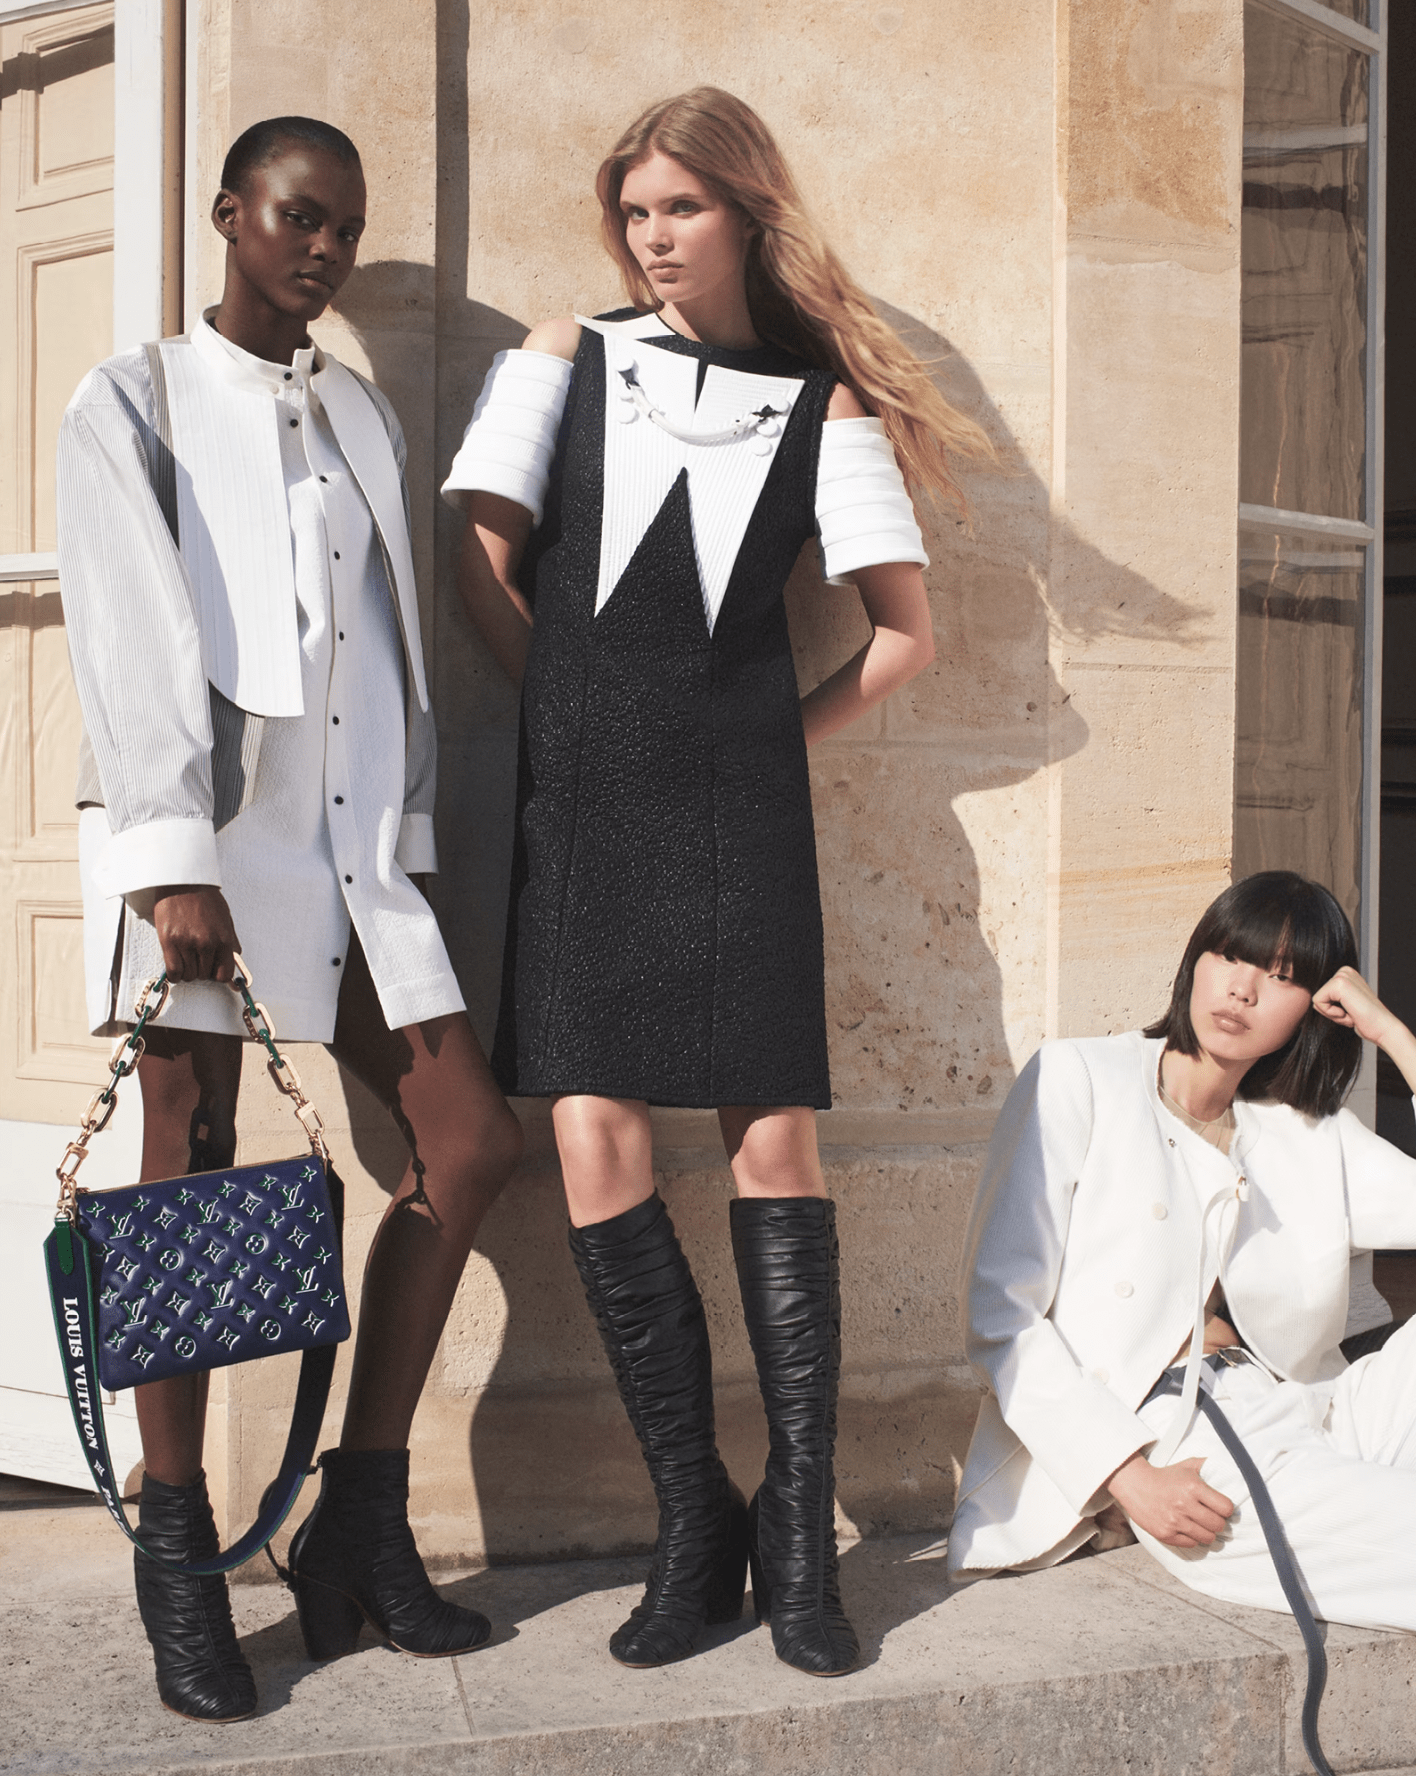 Louis Vuitton 'Malle Vesitiaire' 2023 Ad Campaign